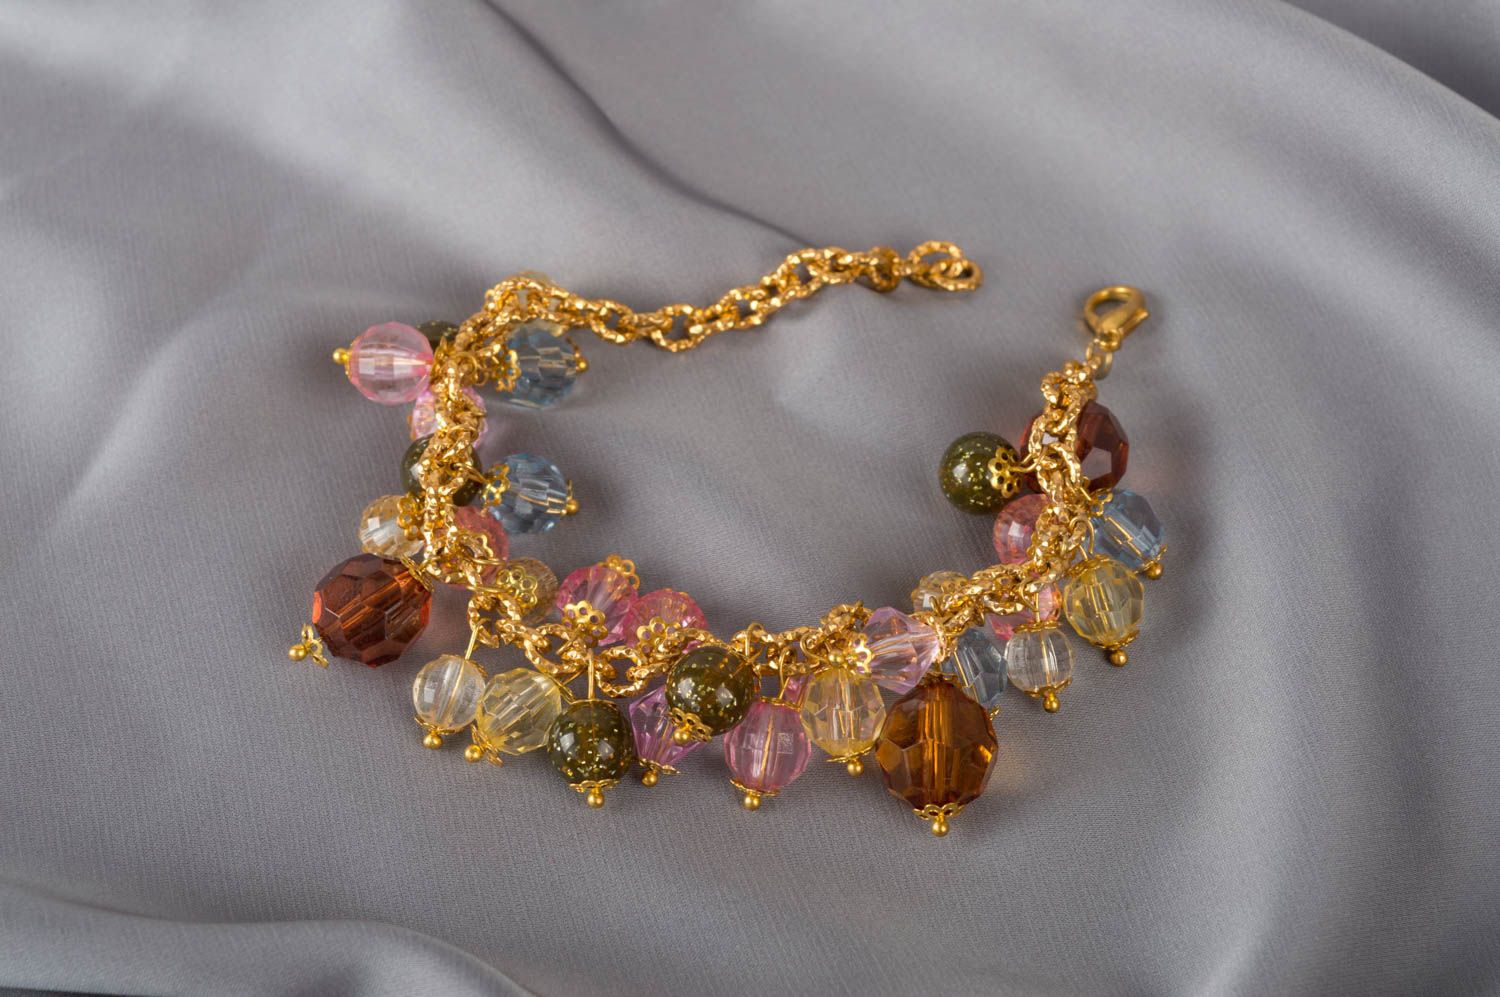 Crystal plastic beads charm bracelet for girls photo 1